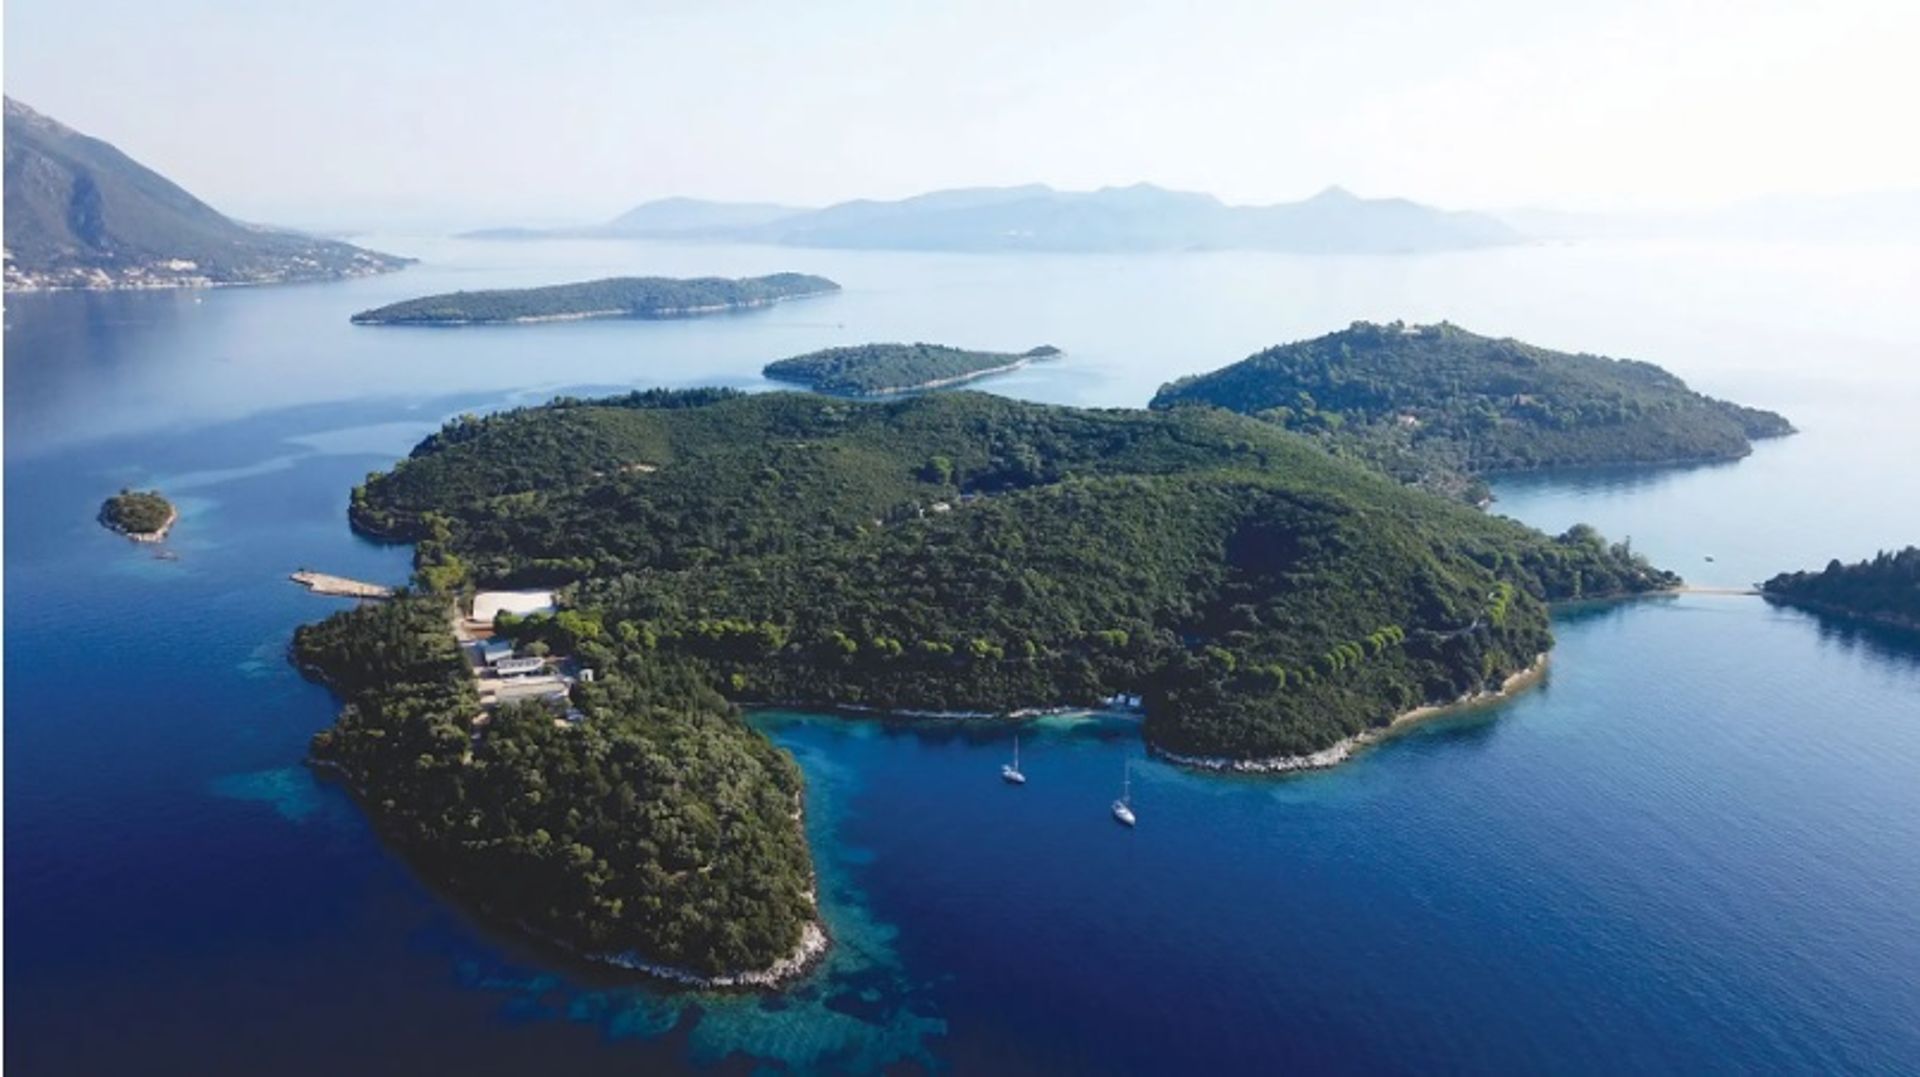 האי סקורפיוס, שנקנה על ידי דמיטרי ריבולובלב מהצאצא האחרון שנותר של אריסטו אונאסיס, עשוי להפוך למחבוא אמנות

Adobe Stock